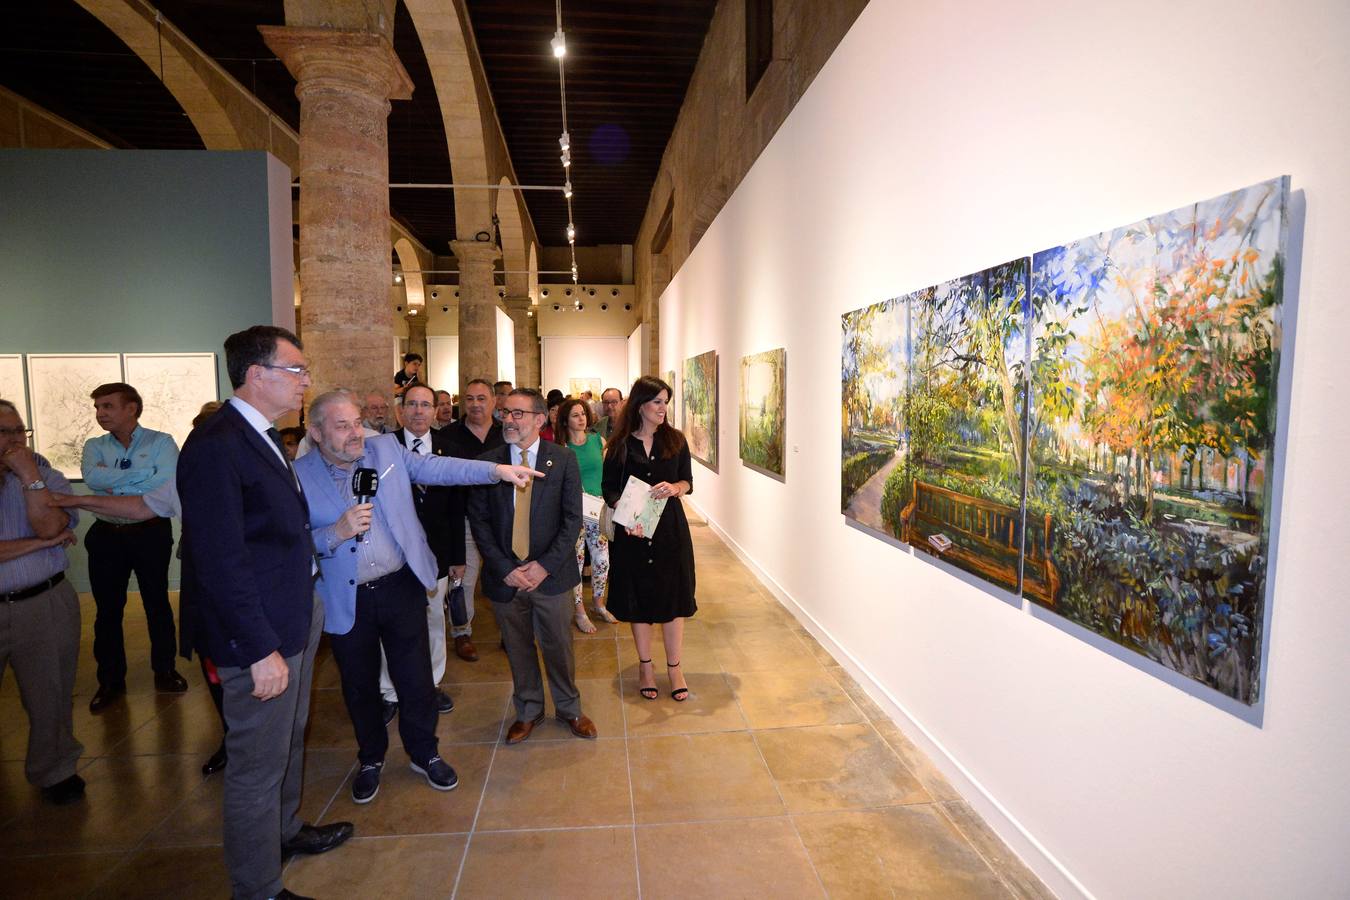 El pintor Hurtado Mena (Murcia, 1955) protagoniza la exposición 'El huerto de vida', un mundo de libertad para el que ha escogido su entorno más cercano